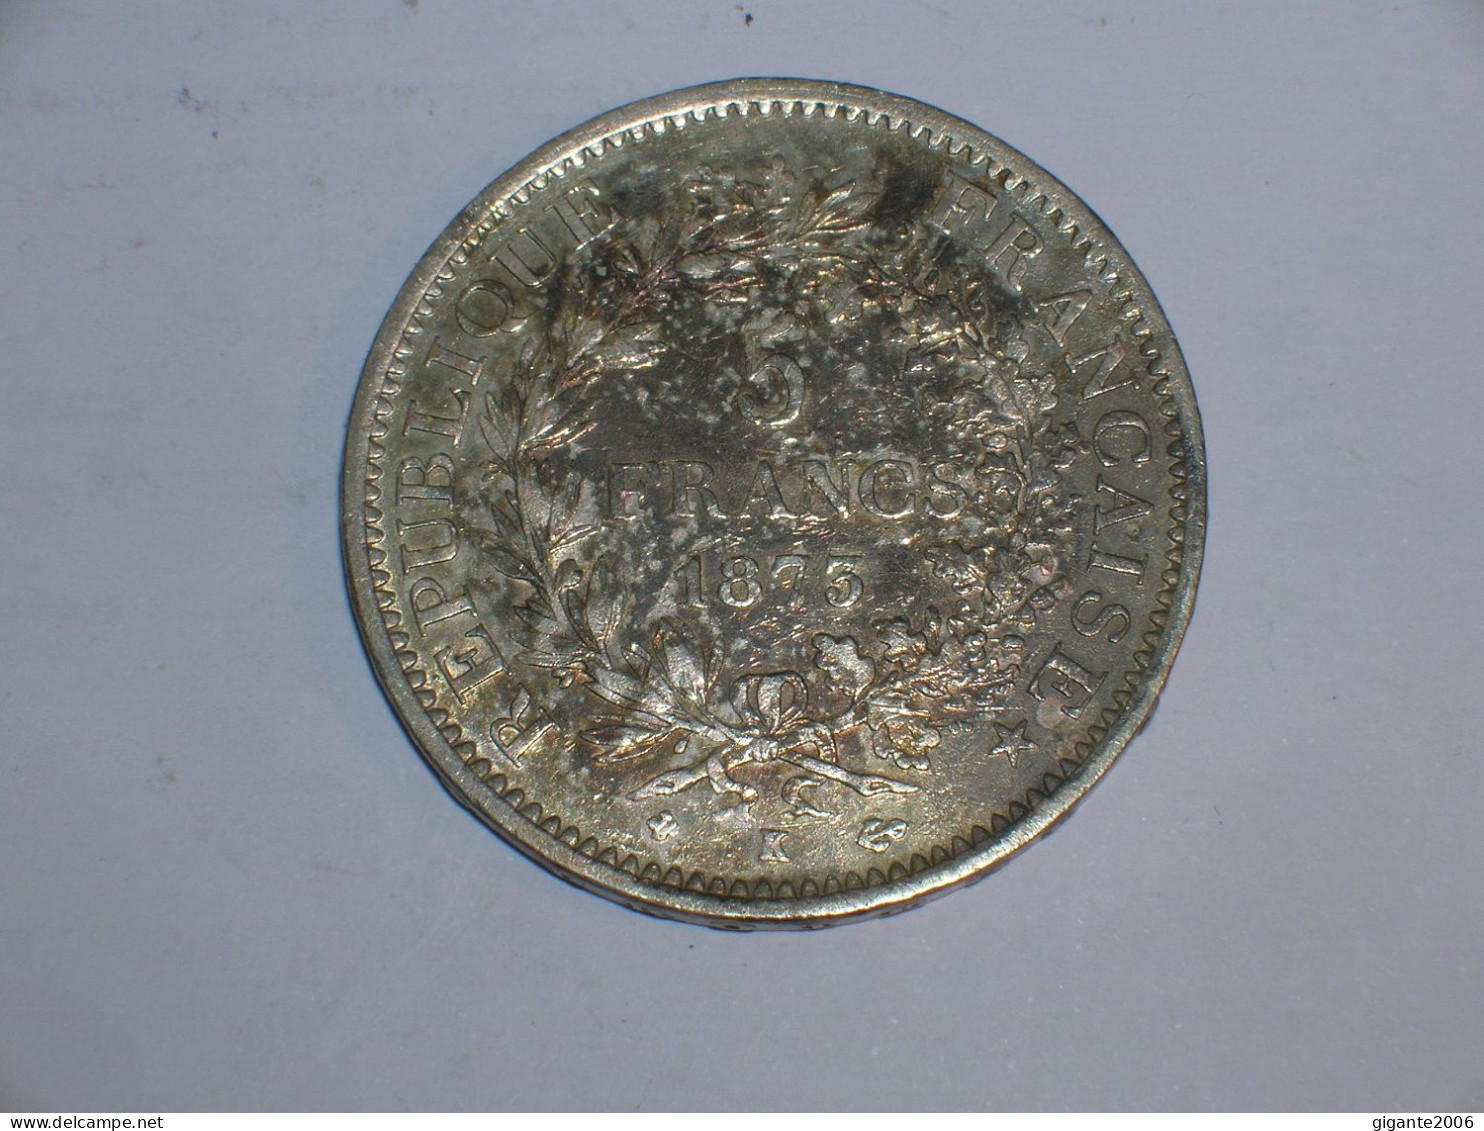 FRANCIA 5 FRANCOS 1873 K (14004) - 5 Francs